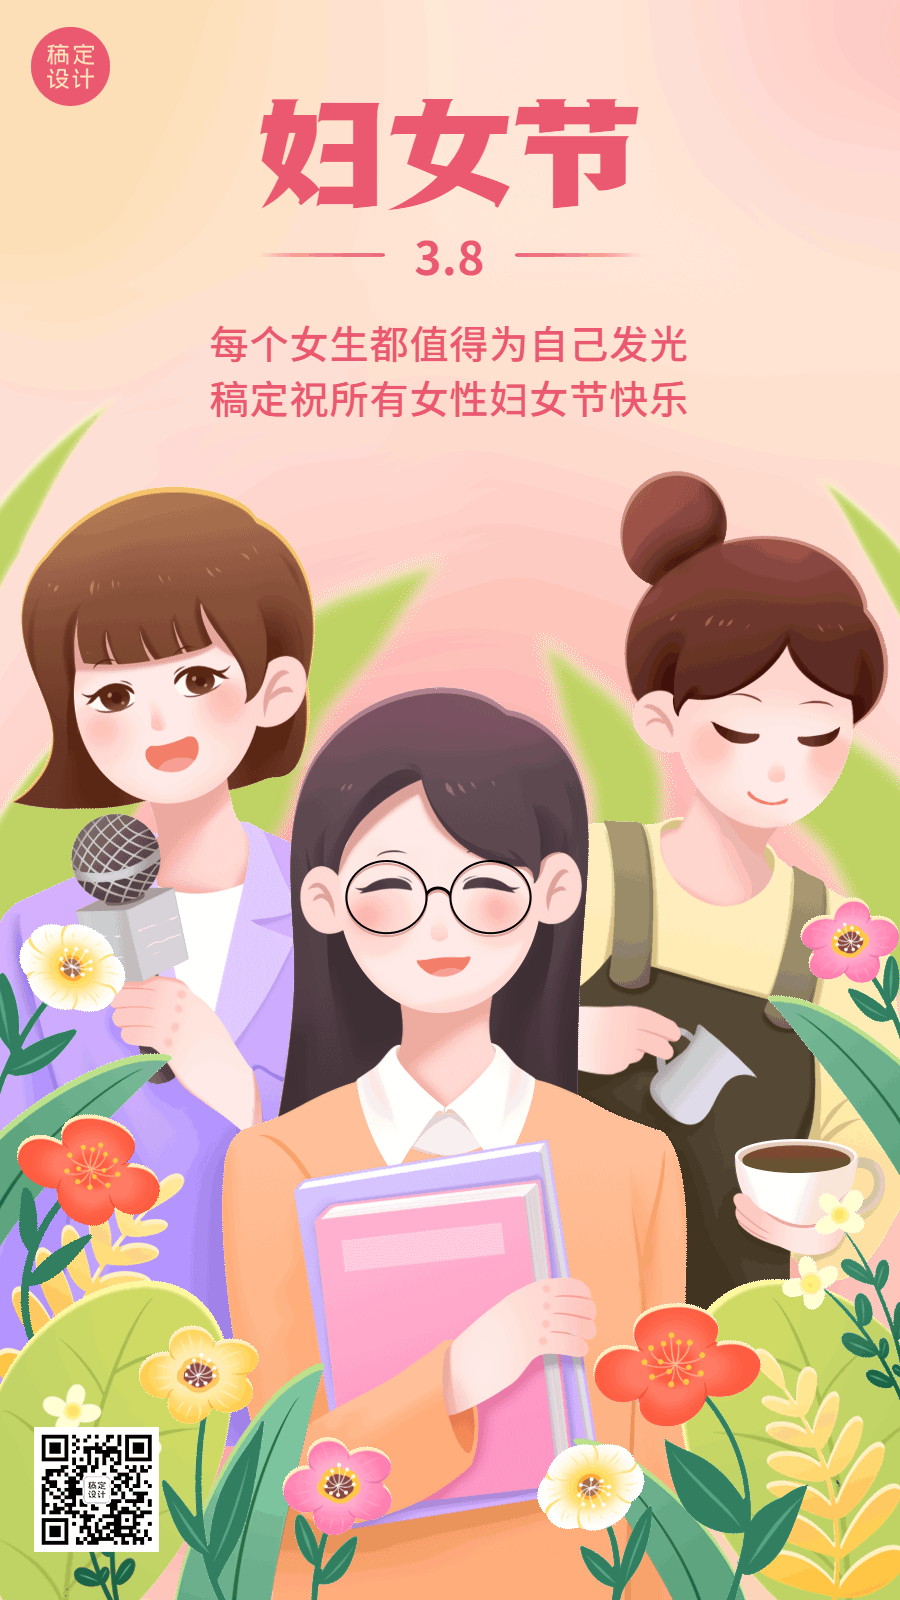 三八妇女节通用节日祝福插画动态海报预览效果